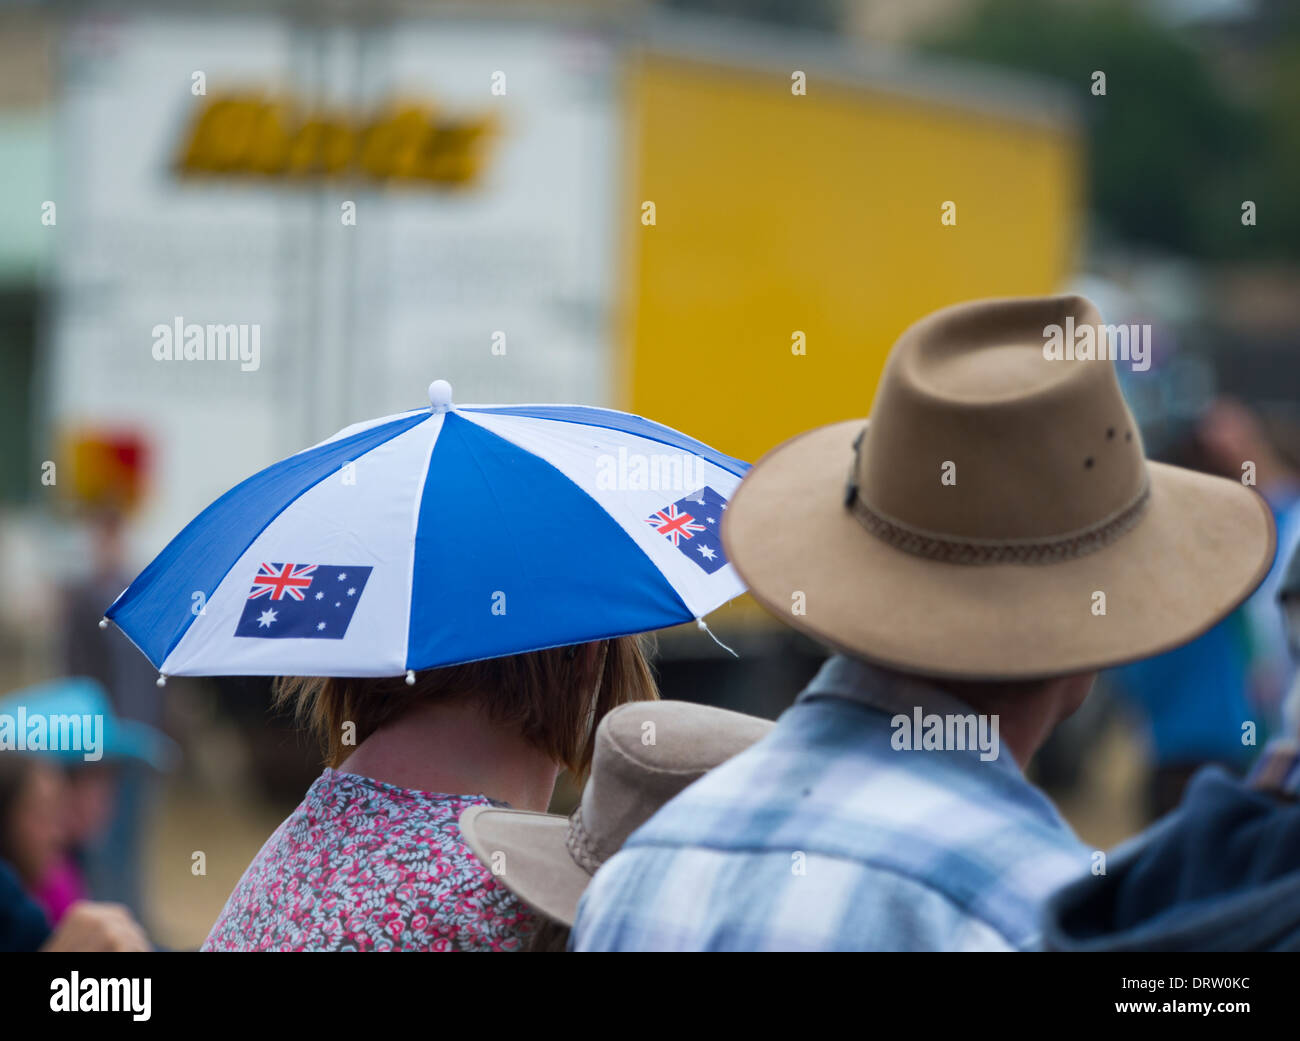 Chapeau parapluie avec drapeau australien - Australie Photo Stock - Alamy